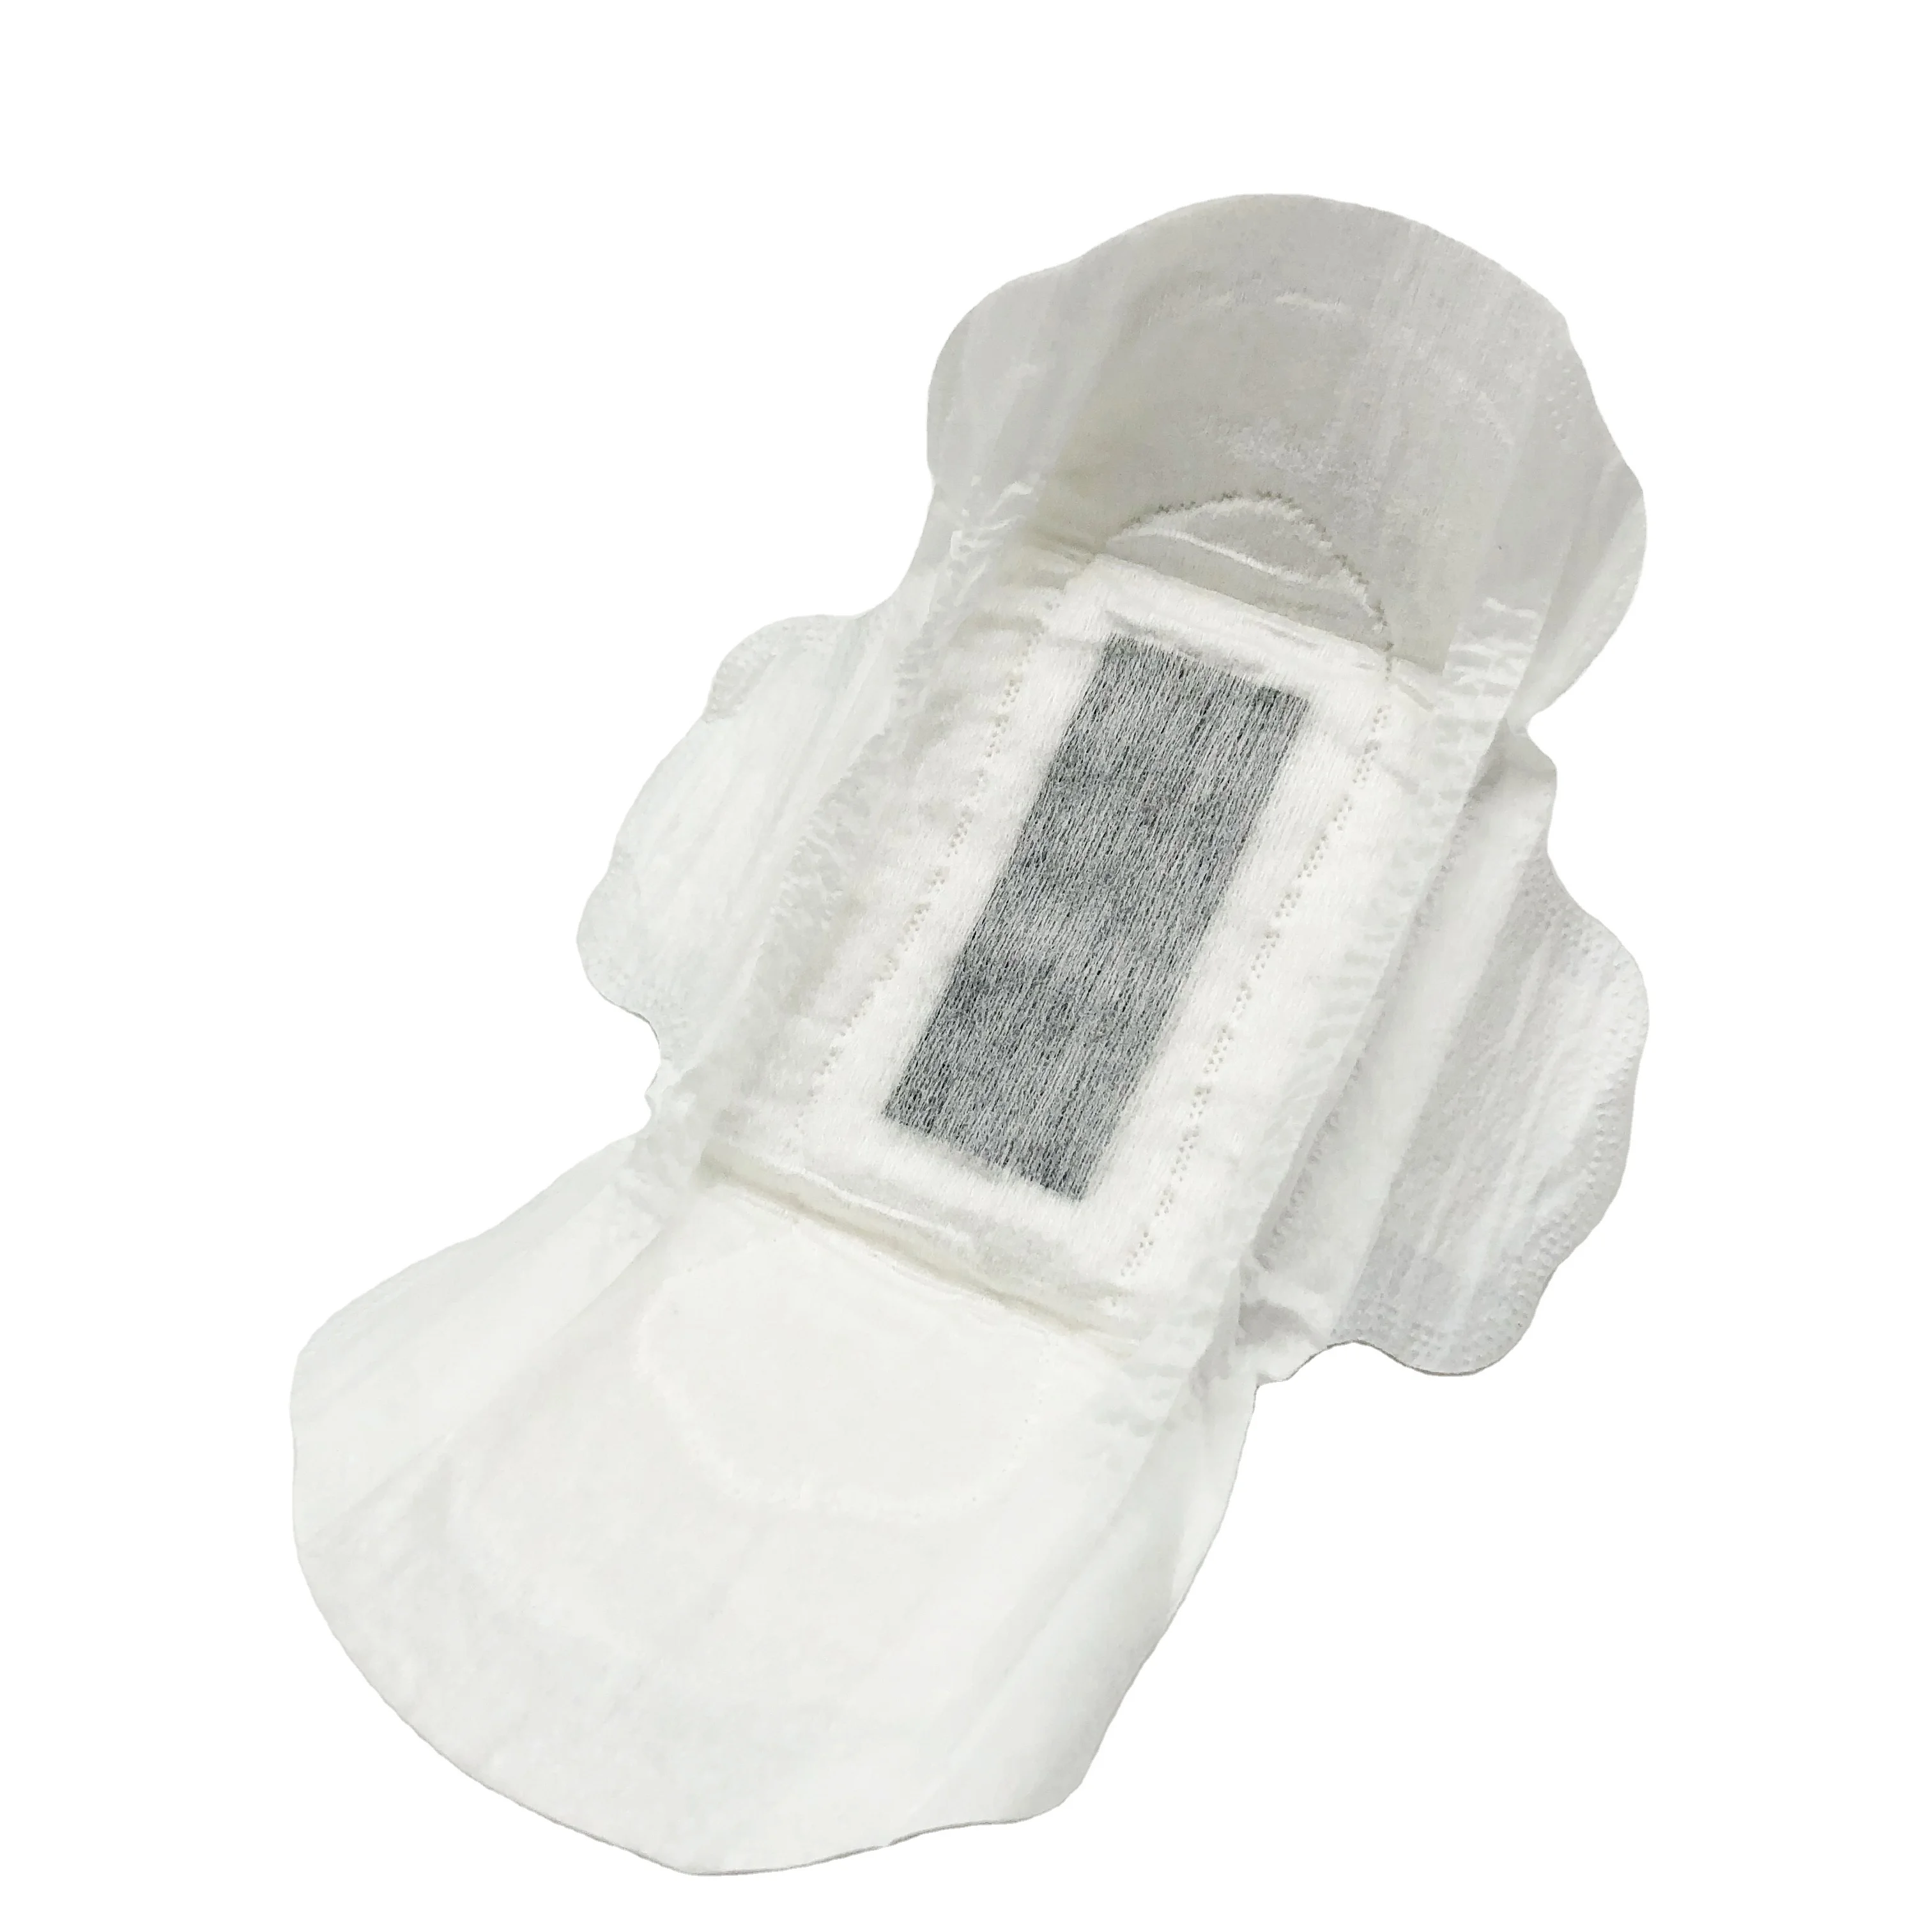 

Grand Launch Feminine Sanitary Pads Biodegradable Hypoallergenic Custom Organic Cotton Sanitary Pads Storage Bag